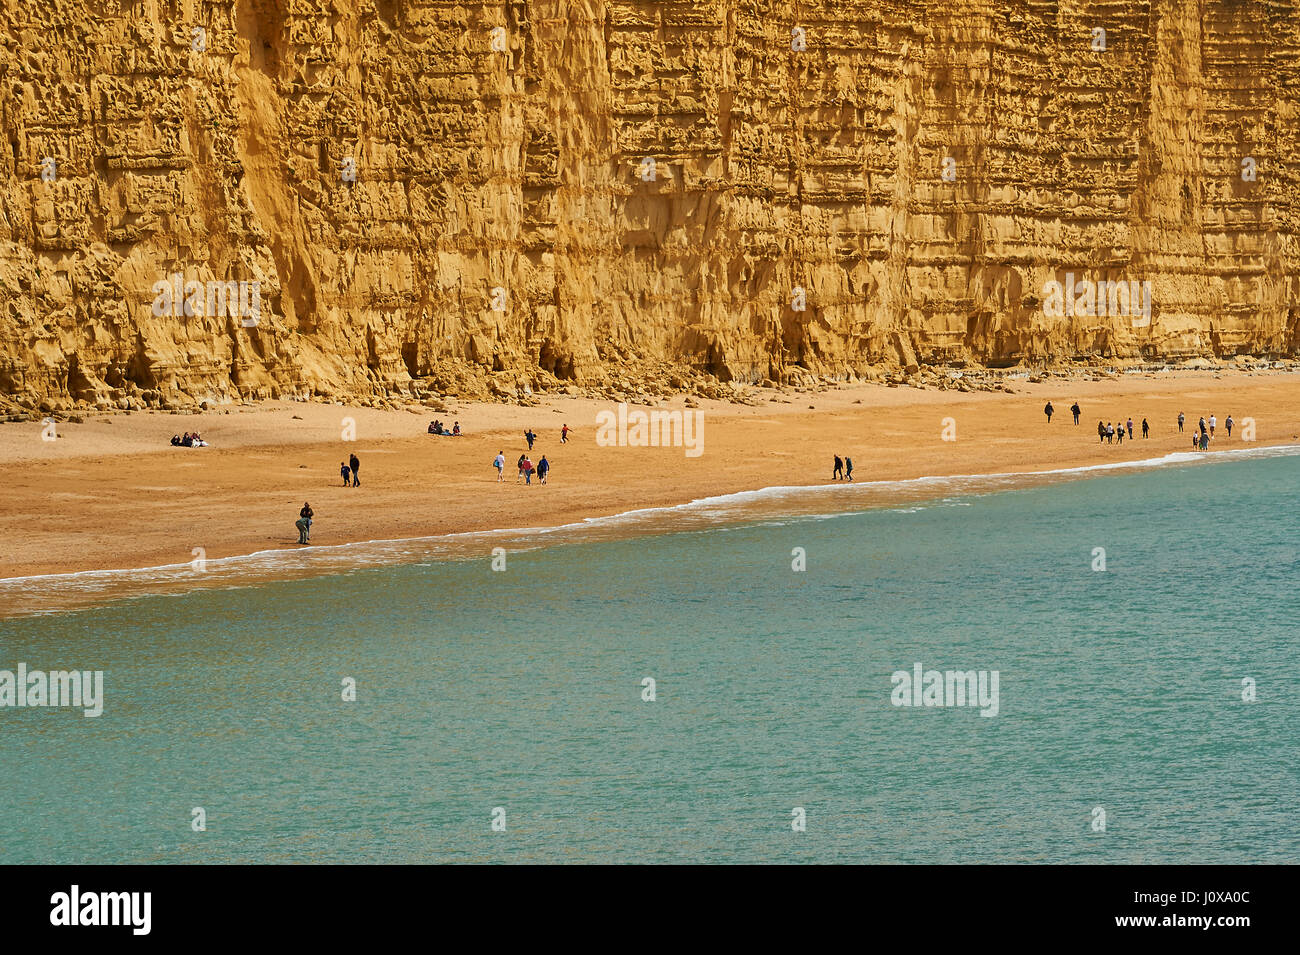 Sandsteinfelsen von East Cliff in Dorset am Meer Stadt von West Bay. Die berühmten Klippen sind auf der Jurassic Coast und etwa 150 Millionen Jahre alt. Stockfoto